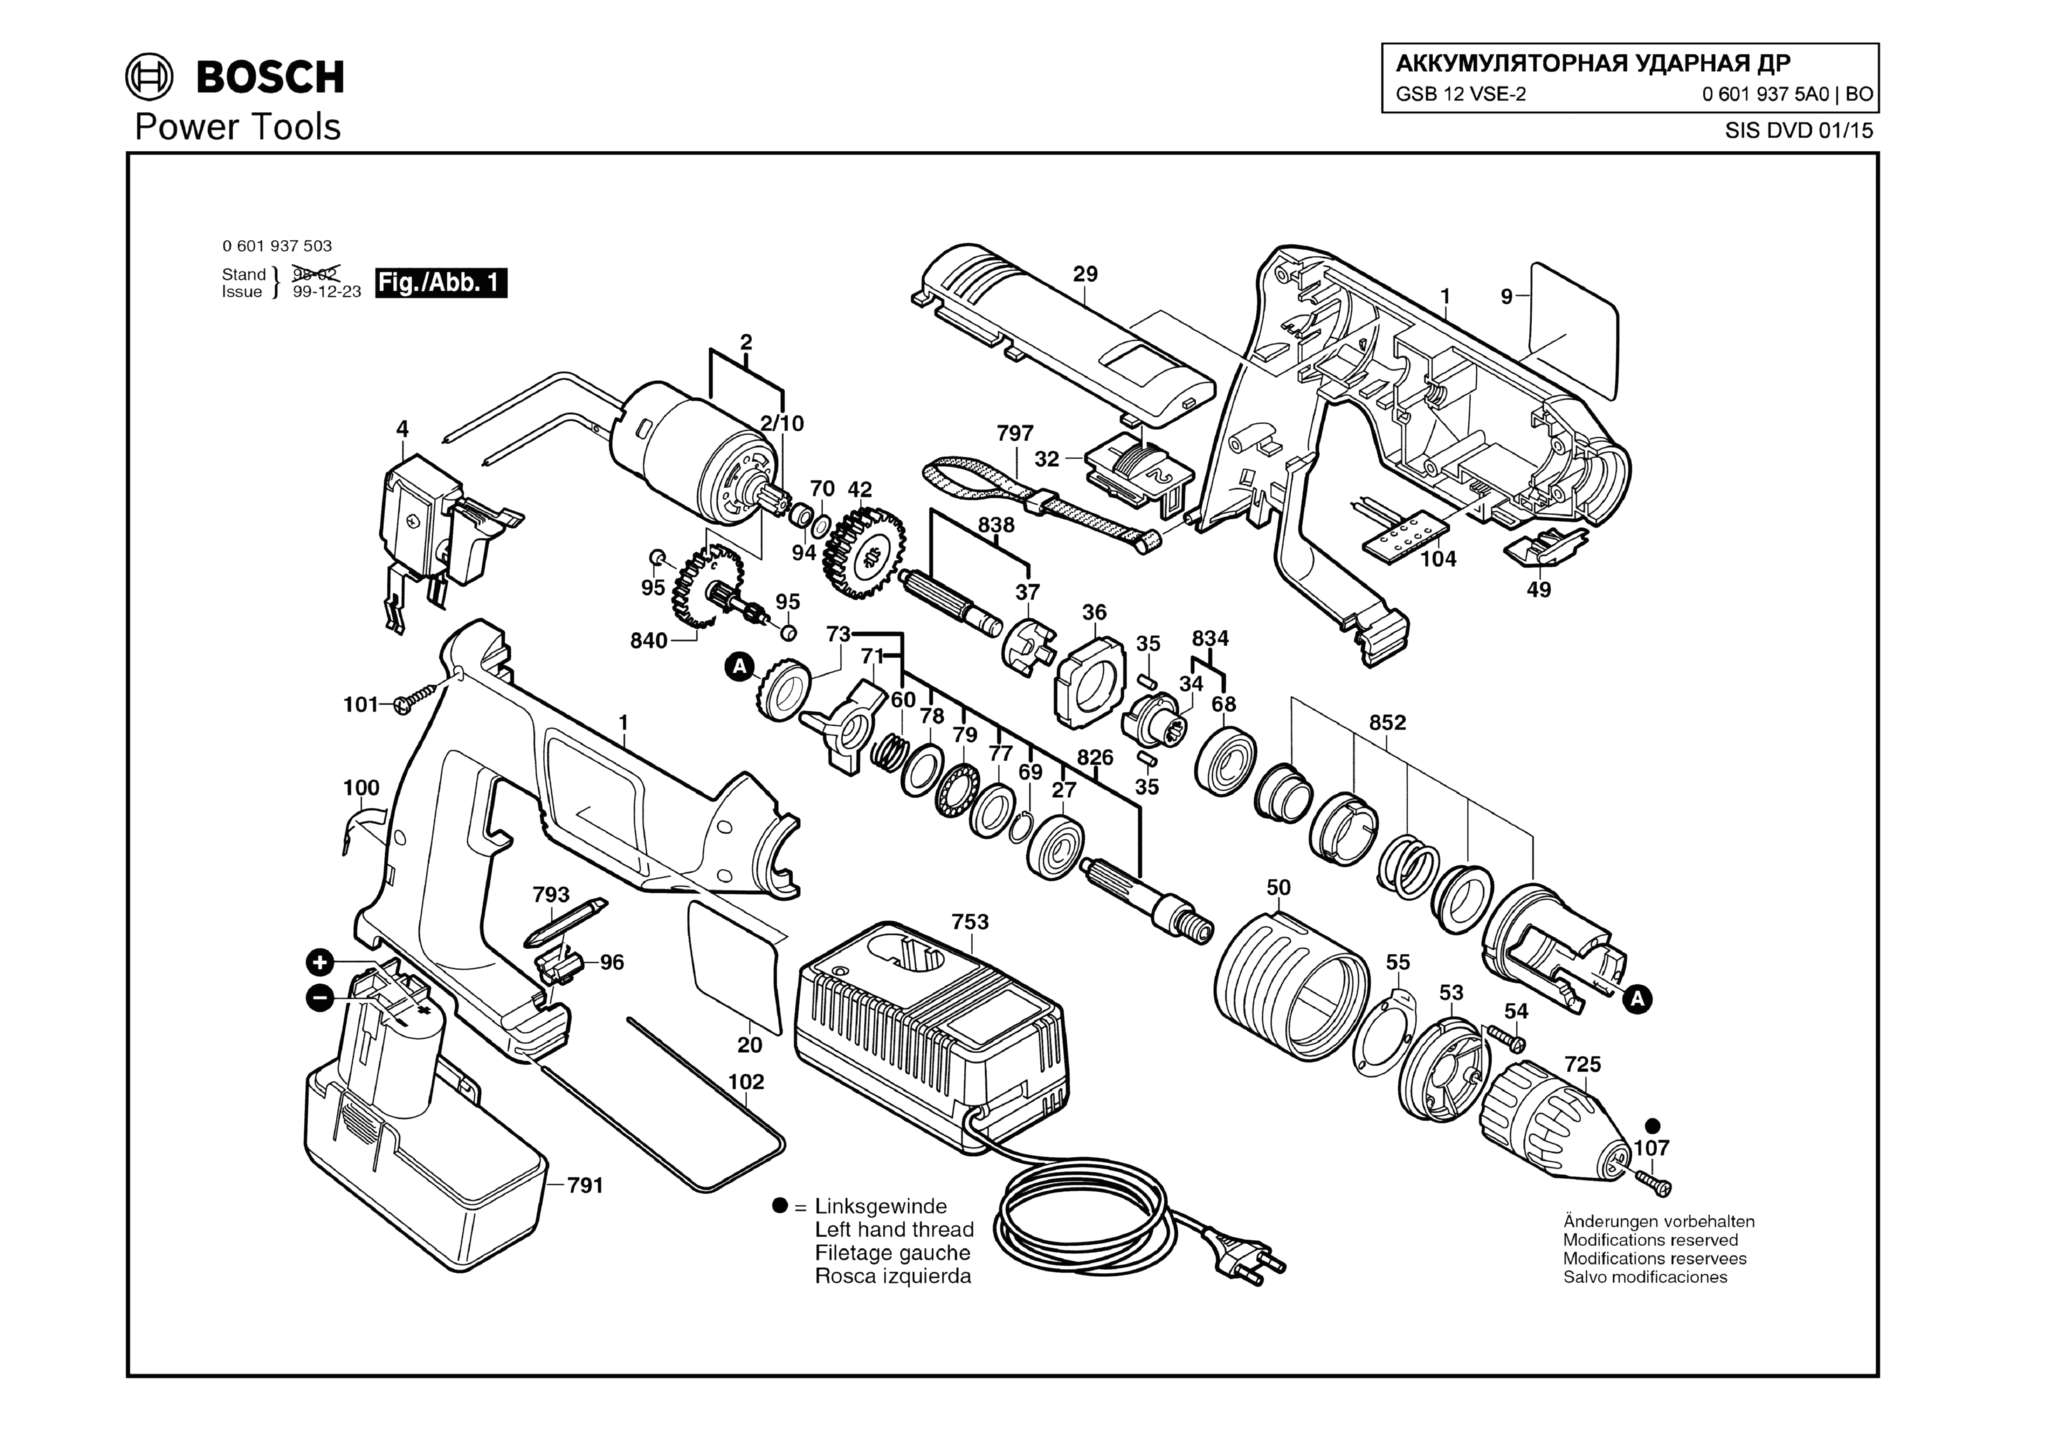 Запчасти, схема и деталировка Bosch GSB 12 VSE-2 (ТИП 06019375AO)